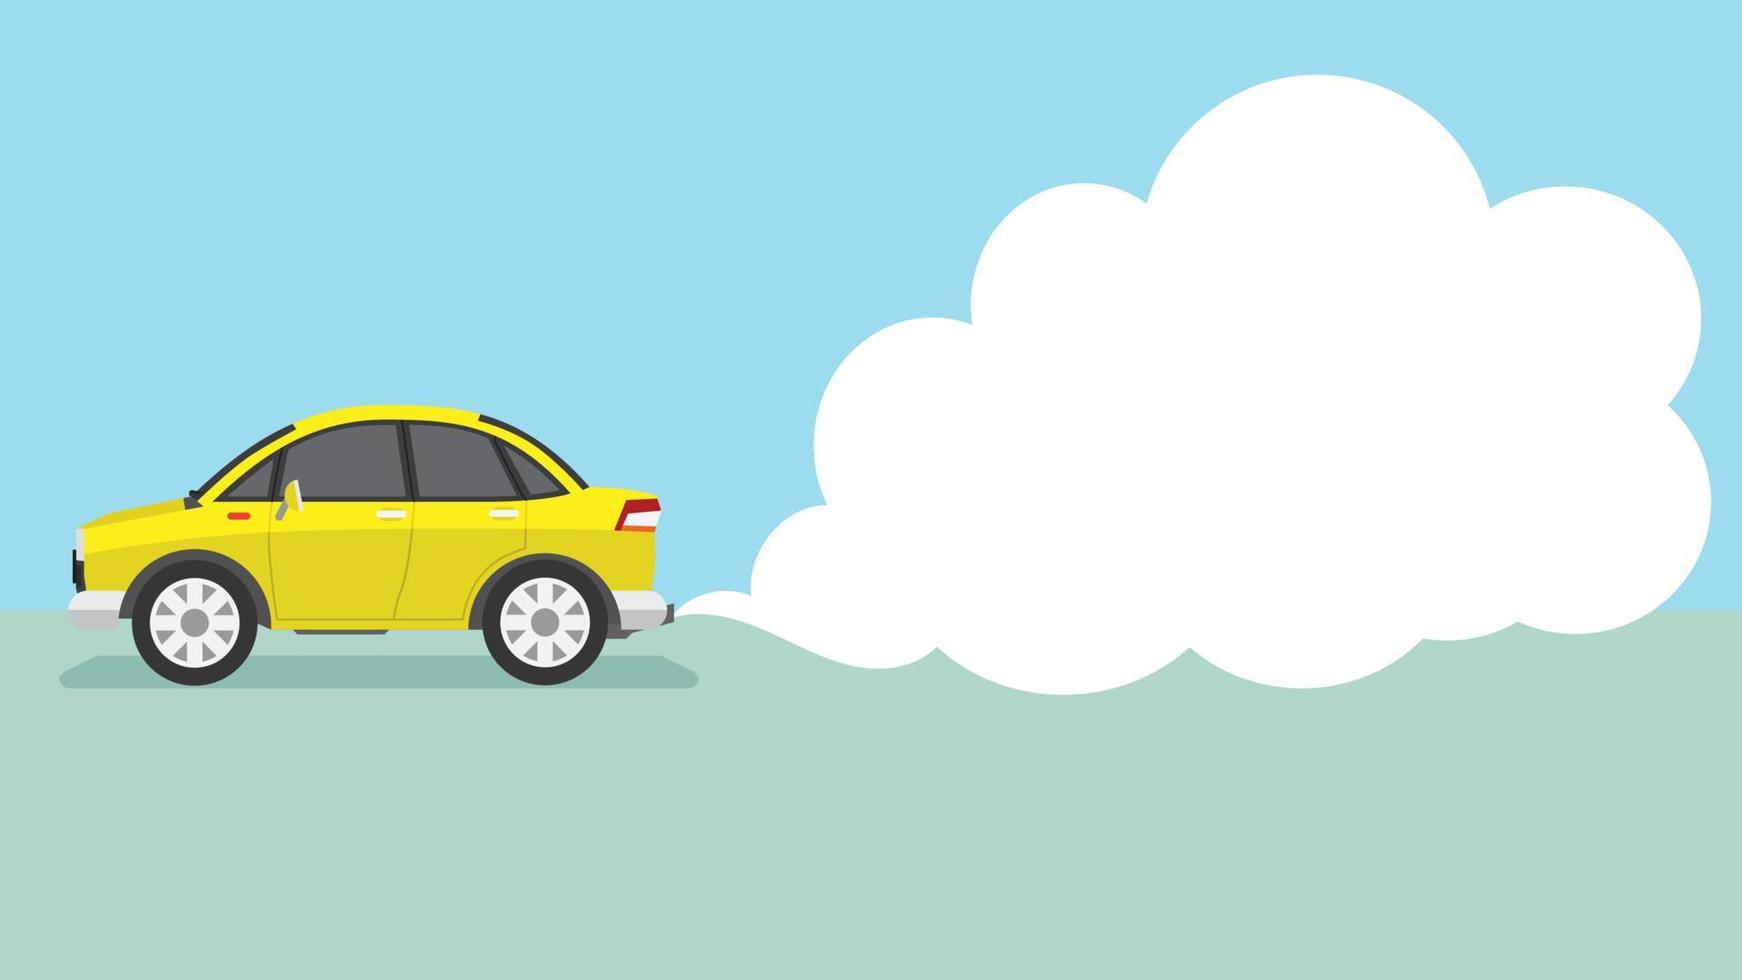 il vettore o l'illustrazione dell'auto del fumetto giallo passa emettendo fumi inquinanti o fumo dal tubo di scarico. spazio vuoto per il testo nel fumo.